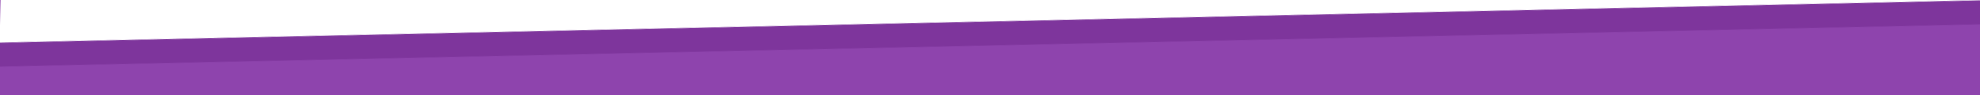 slant-purple